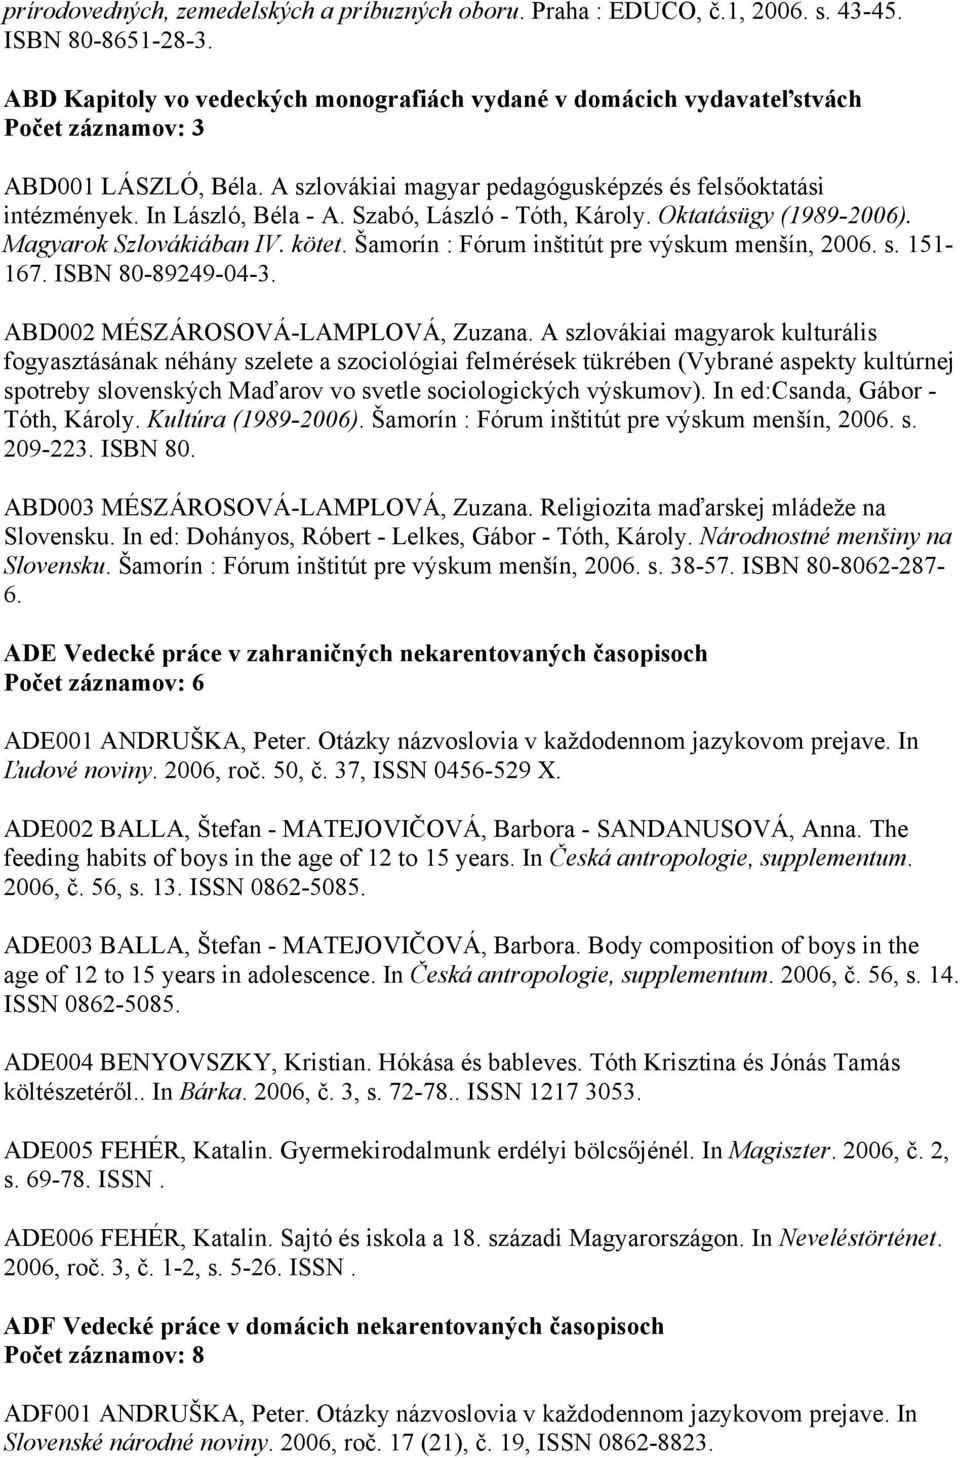 Szabó, László - Tóth, Károly. Oktatásügy (1989-2006). Magyarok Szlovákiában IV. kötet. Šamorín : Fórum inštitút pre výskum menšín, 2006. s. 151-167. ISBN 80-89249-04-3.